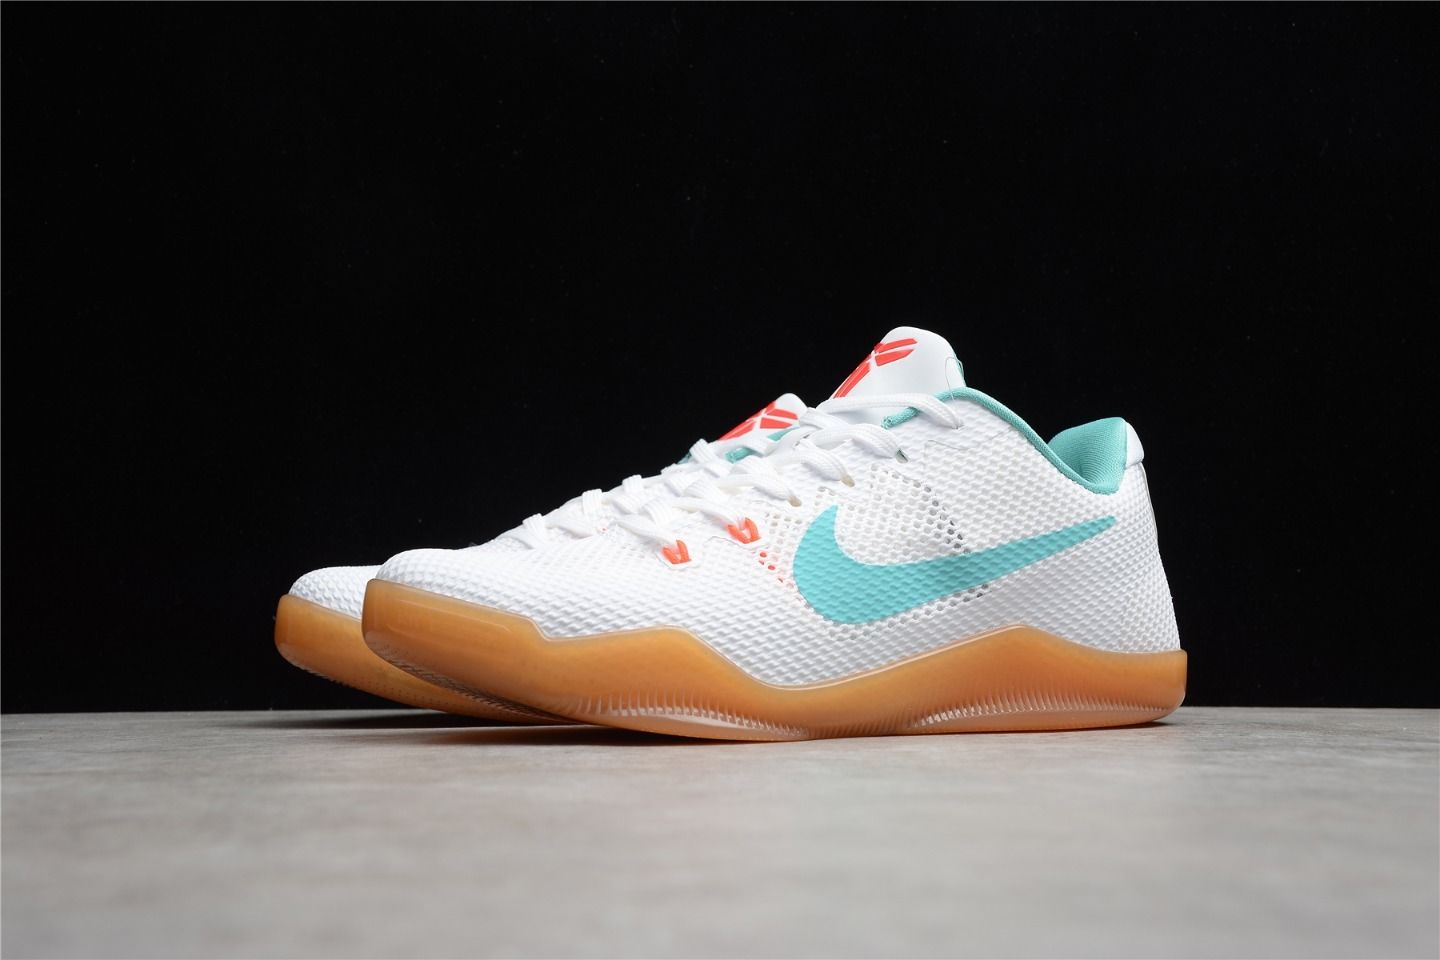 2021 Nike Kobe 11 “Summer Pack” Running Shoes Outlet Sale 836183-103 Left